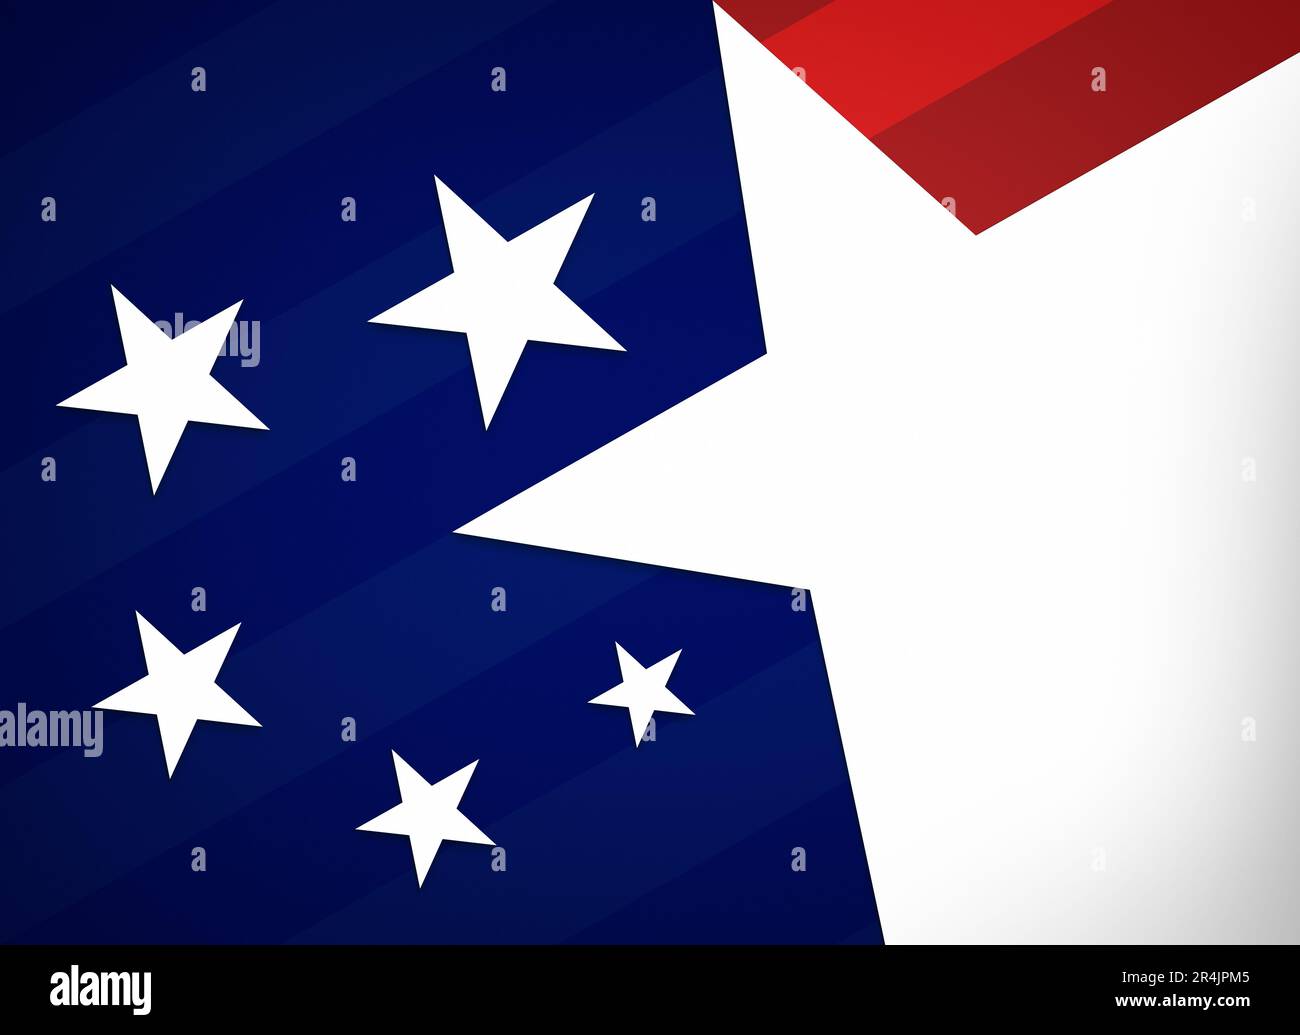 Weiße Sterne auf gestreiftem dunkelblauem und rotem Hintergrund. Abstraktes Konzept zur Veranschaulichung der Flagge der Vereinigten Staaten von Amerika (USA, USA, Amerika). Stockfoto